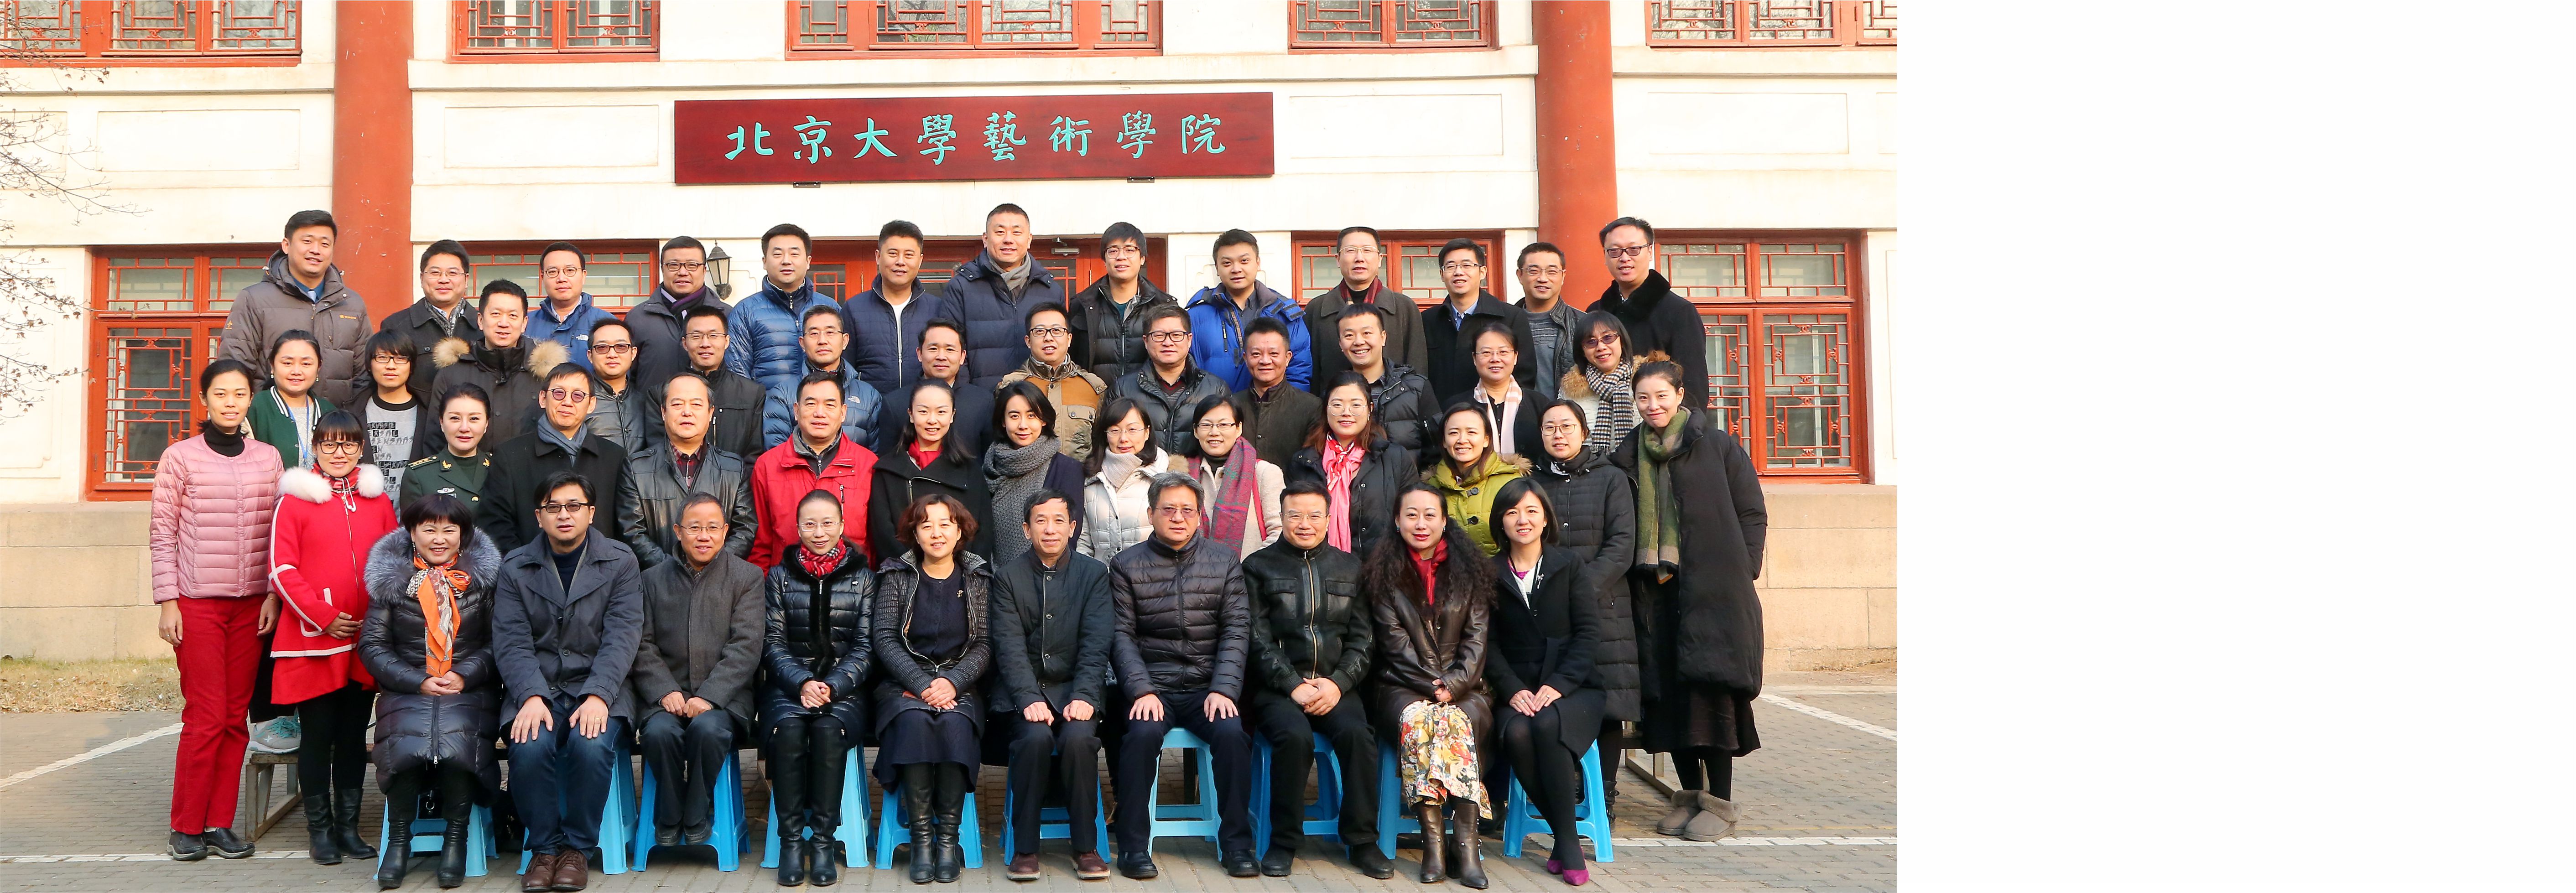 北京大学艺术学院院友会成立大会暨首届院友工作研讨会成功举行